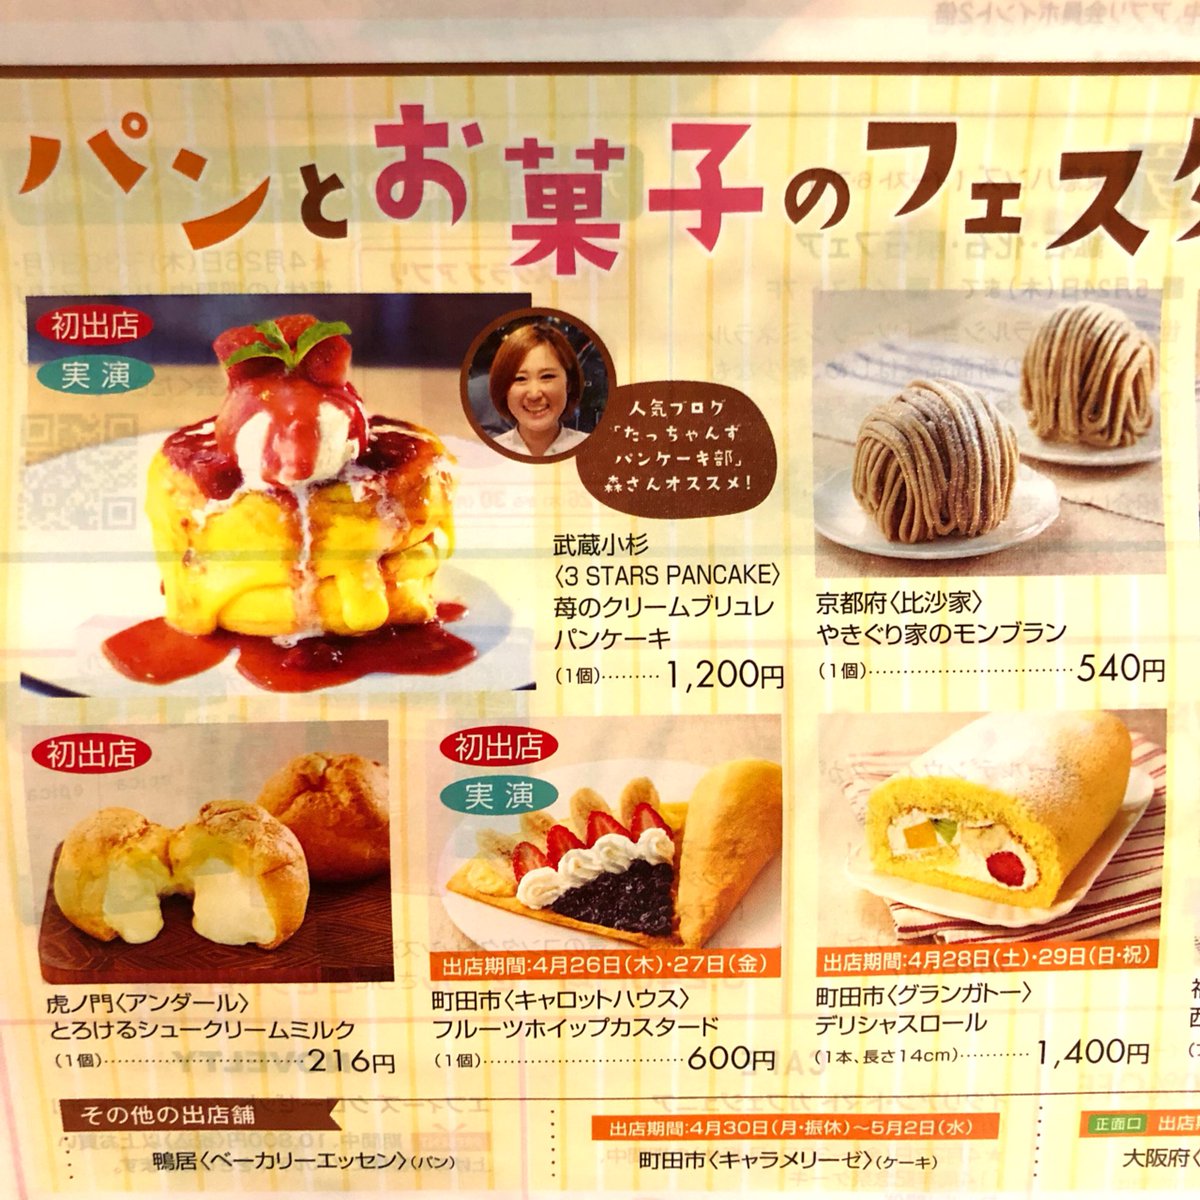 3 Stars Pancake スリースターズが催事に初出店します パンとお菓子のフェスタ 町田東急ツインズ B1階 4月26日 木 5月2日 水 10 00 21 00 Lo 00 メニューは3種類 苺のクリームブリュレ 限定30食 10 スリースターズパンケーキ